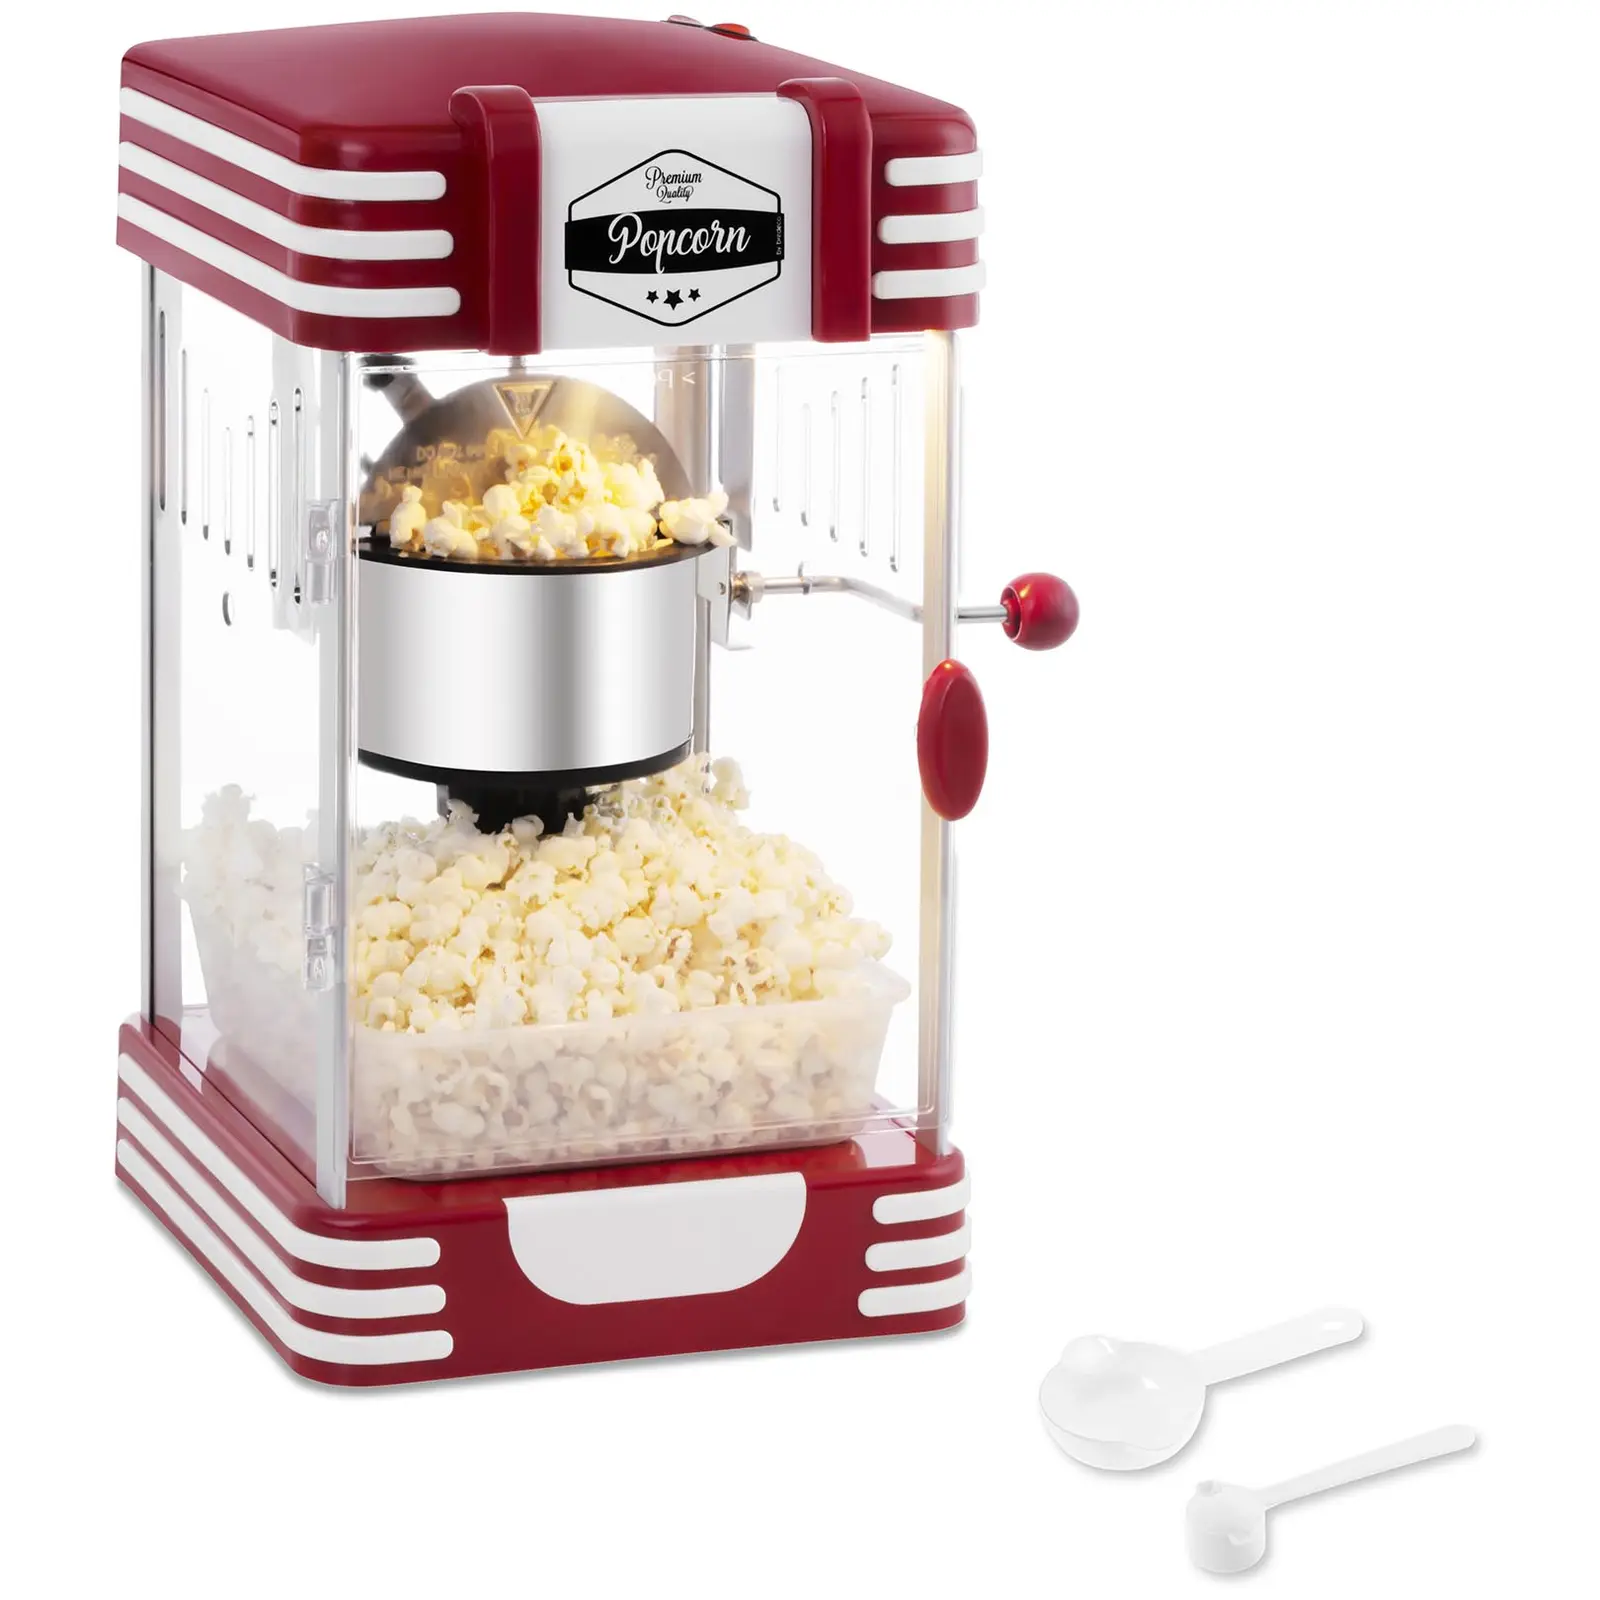 Naprava za pripravo popcorna - retro dizajn iz 50. let - rdeča